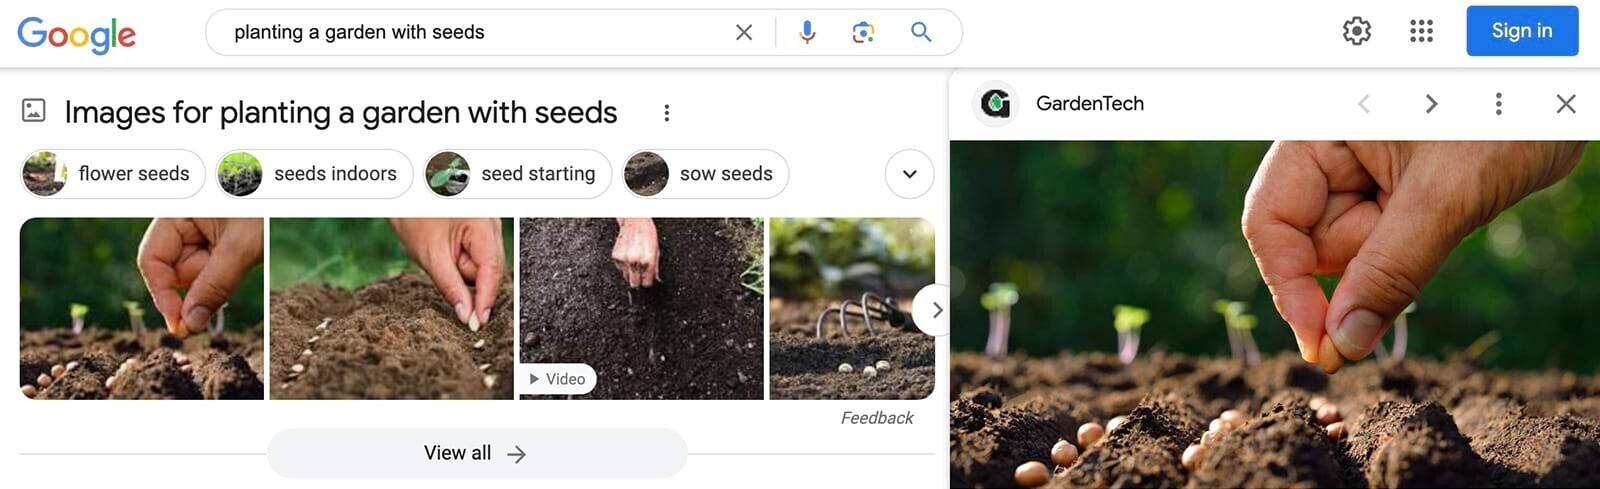 Carrousel d'images pour "planter un jardin avec des graines"